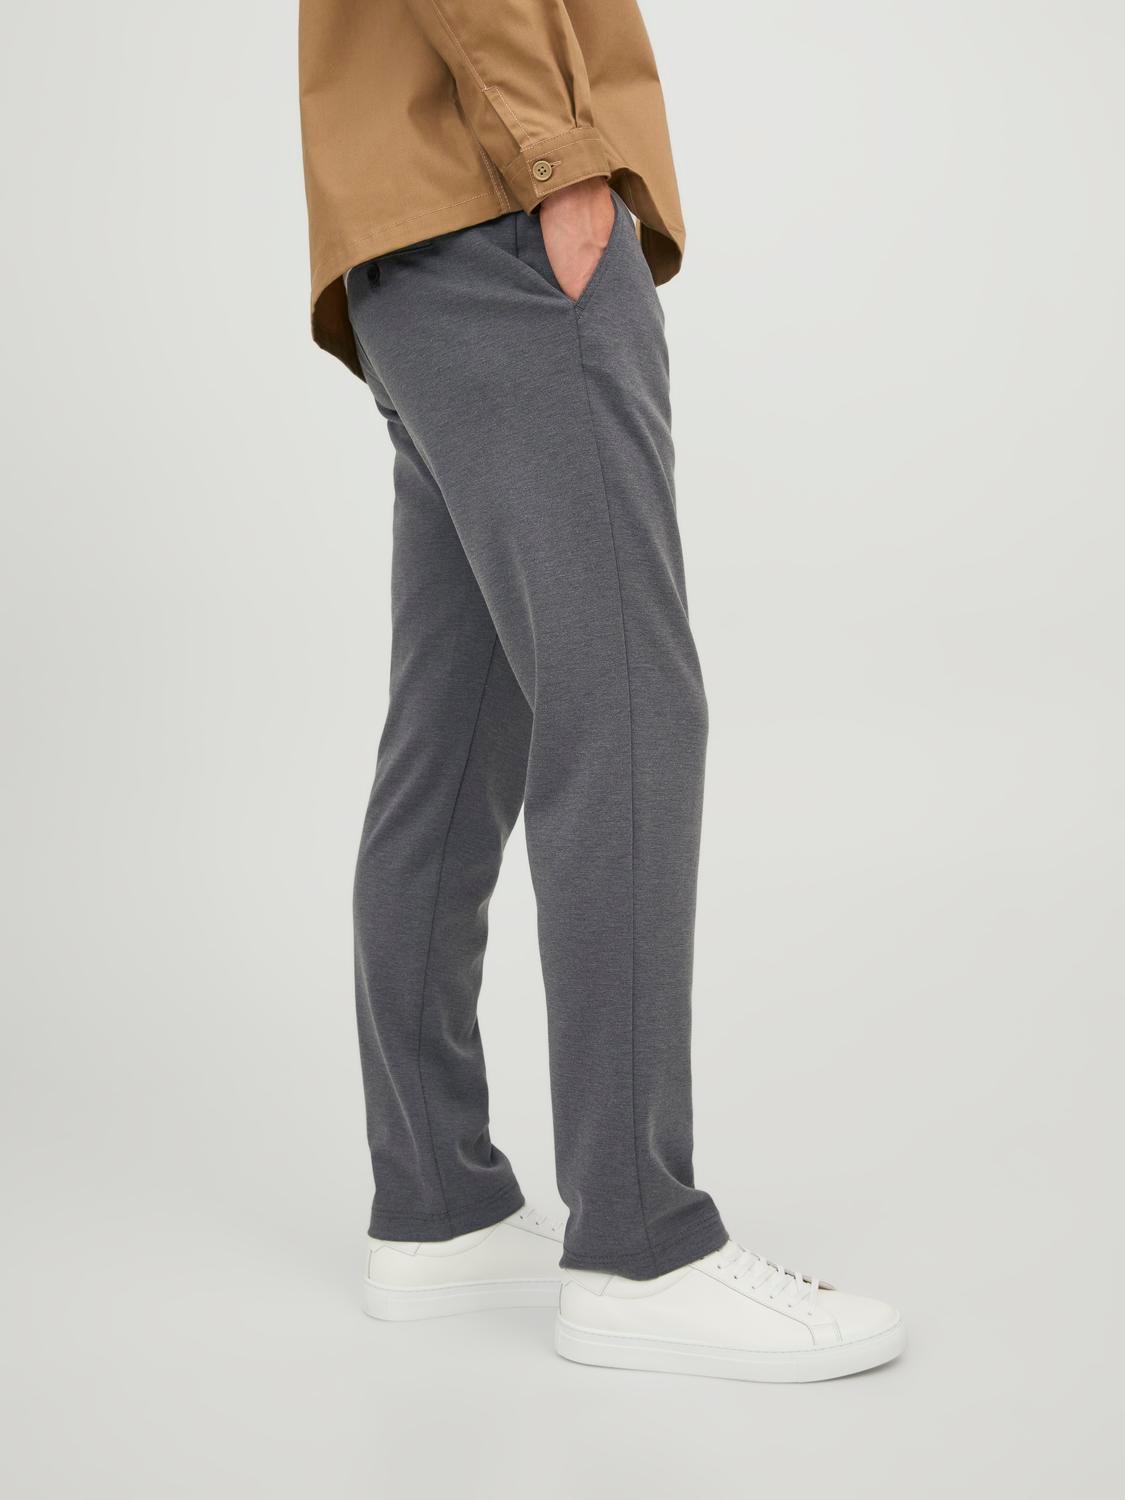 Jack & Jones®  Shop Men's Smart-casual Chino Pants